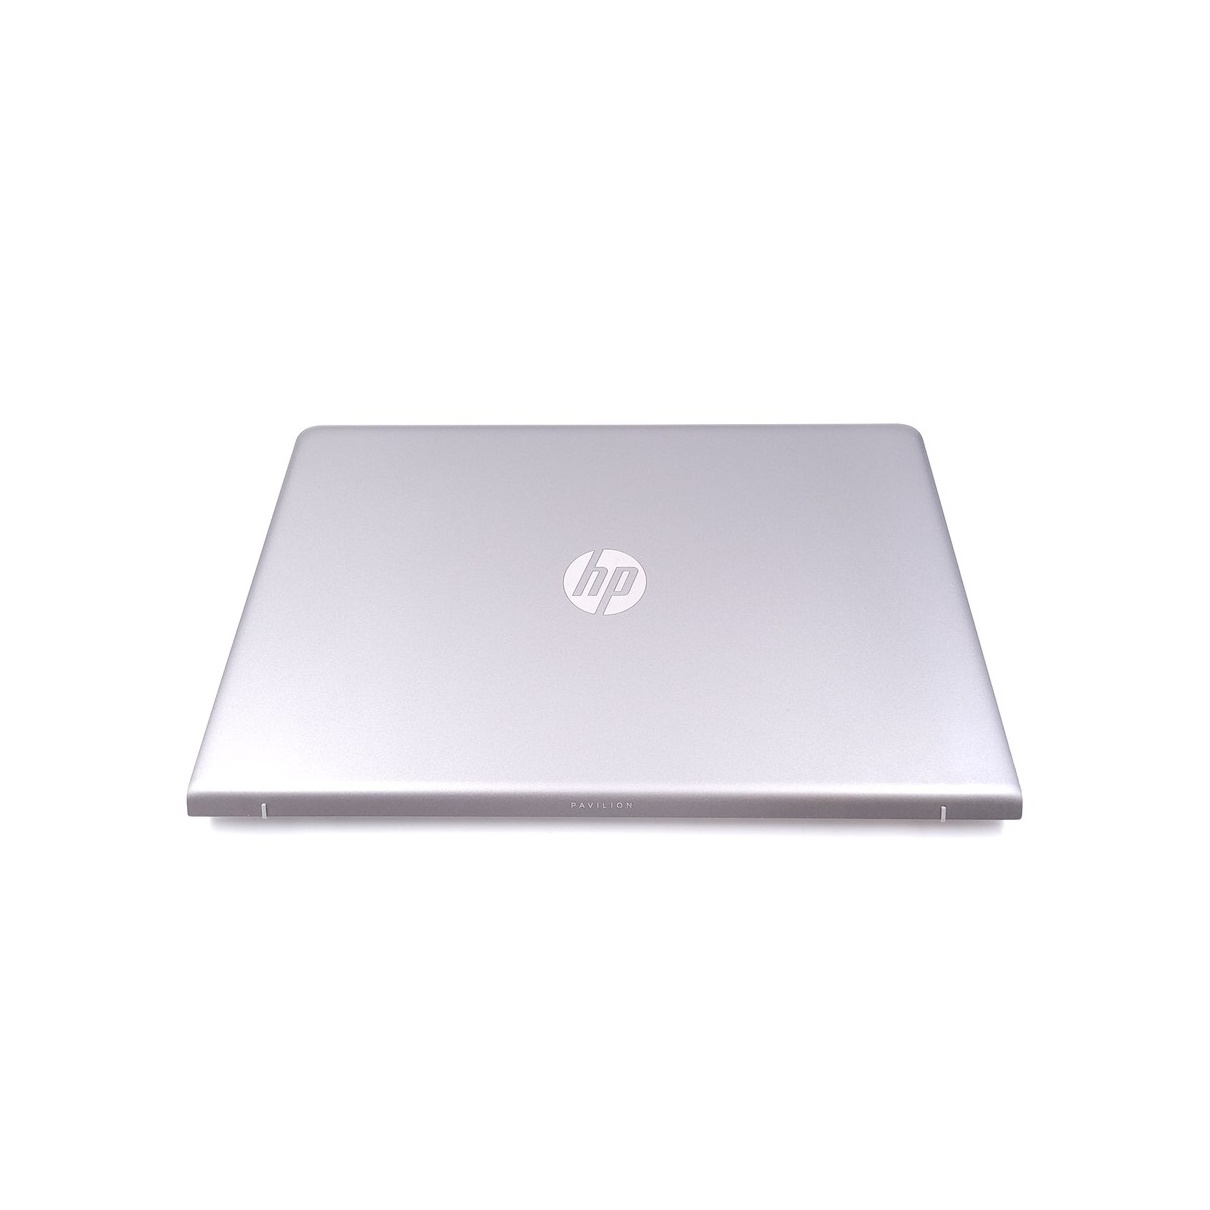 【極美品】HP pavilion laptop 15-cc1